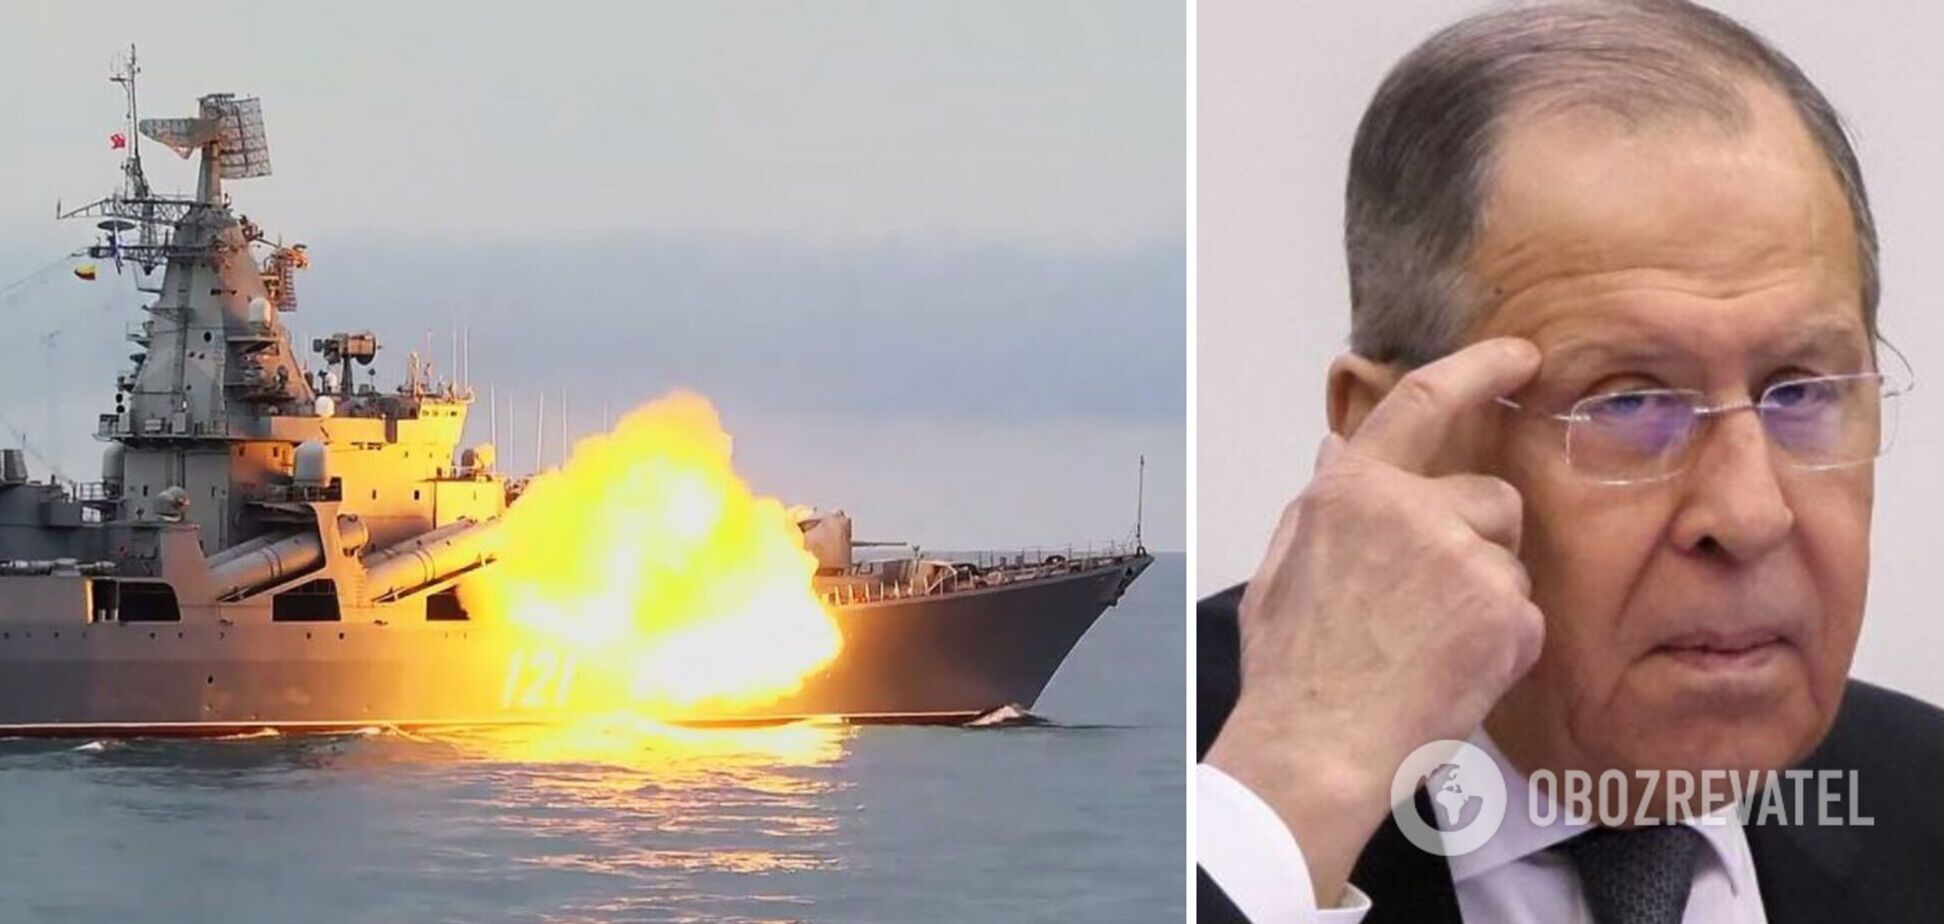 Чи не оборзіли ви, росіяни? Знищувати українські міста – можна, а топити бойовий корабель – ні?